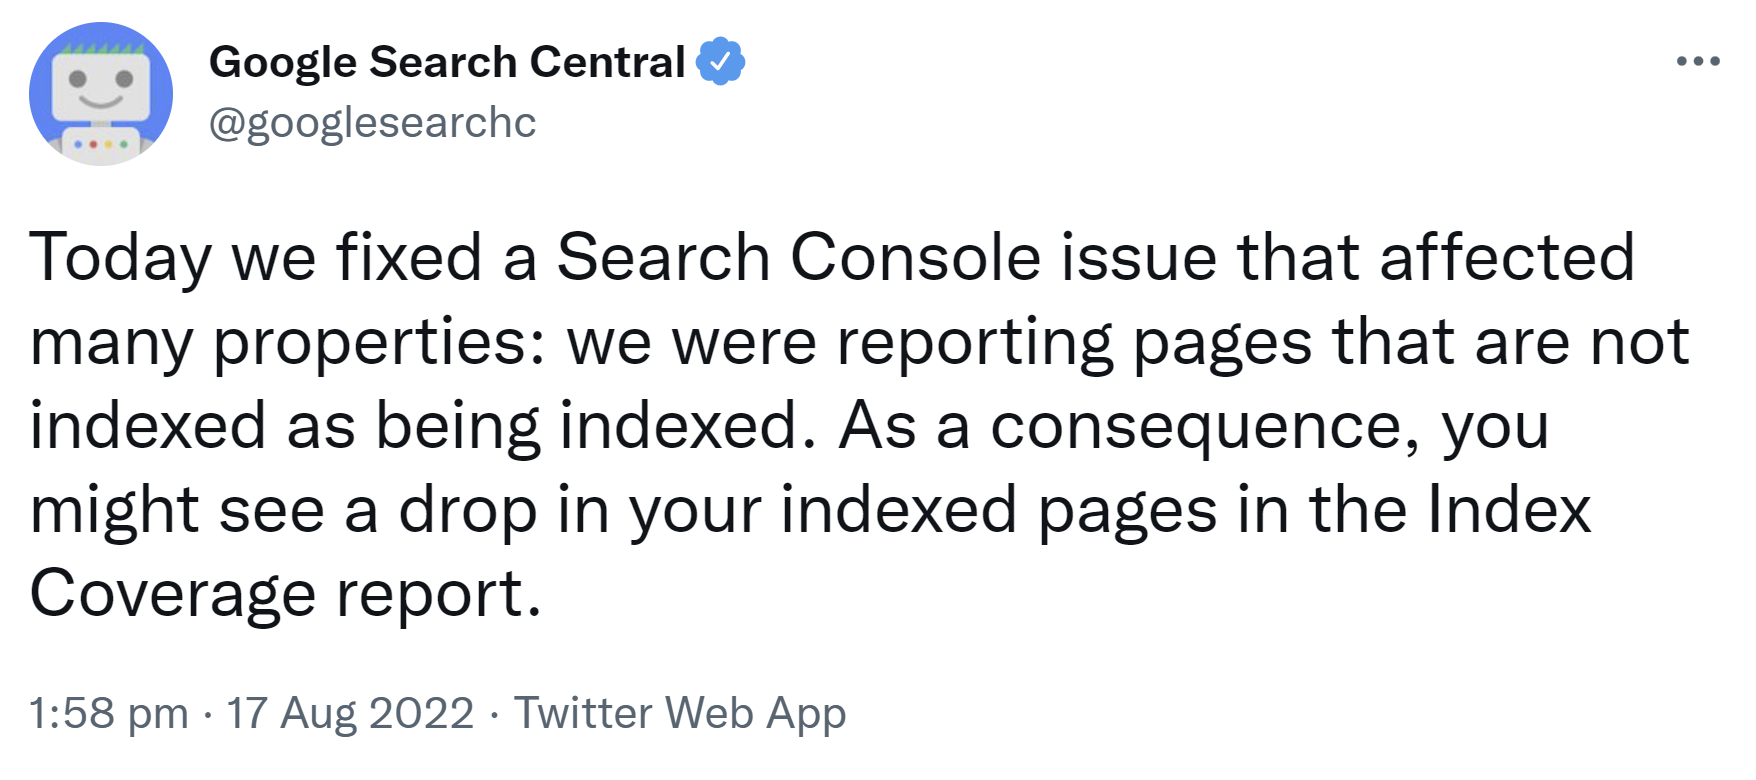 Google hat erklärt, dass durch einen Fehler viele nicht indexierte Websites als indexiert gemeldet wurden